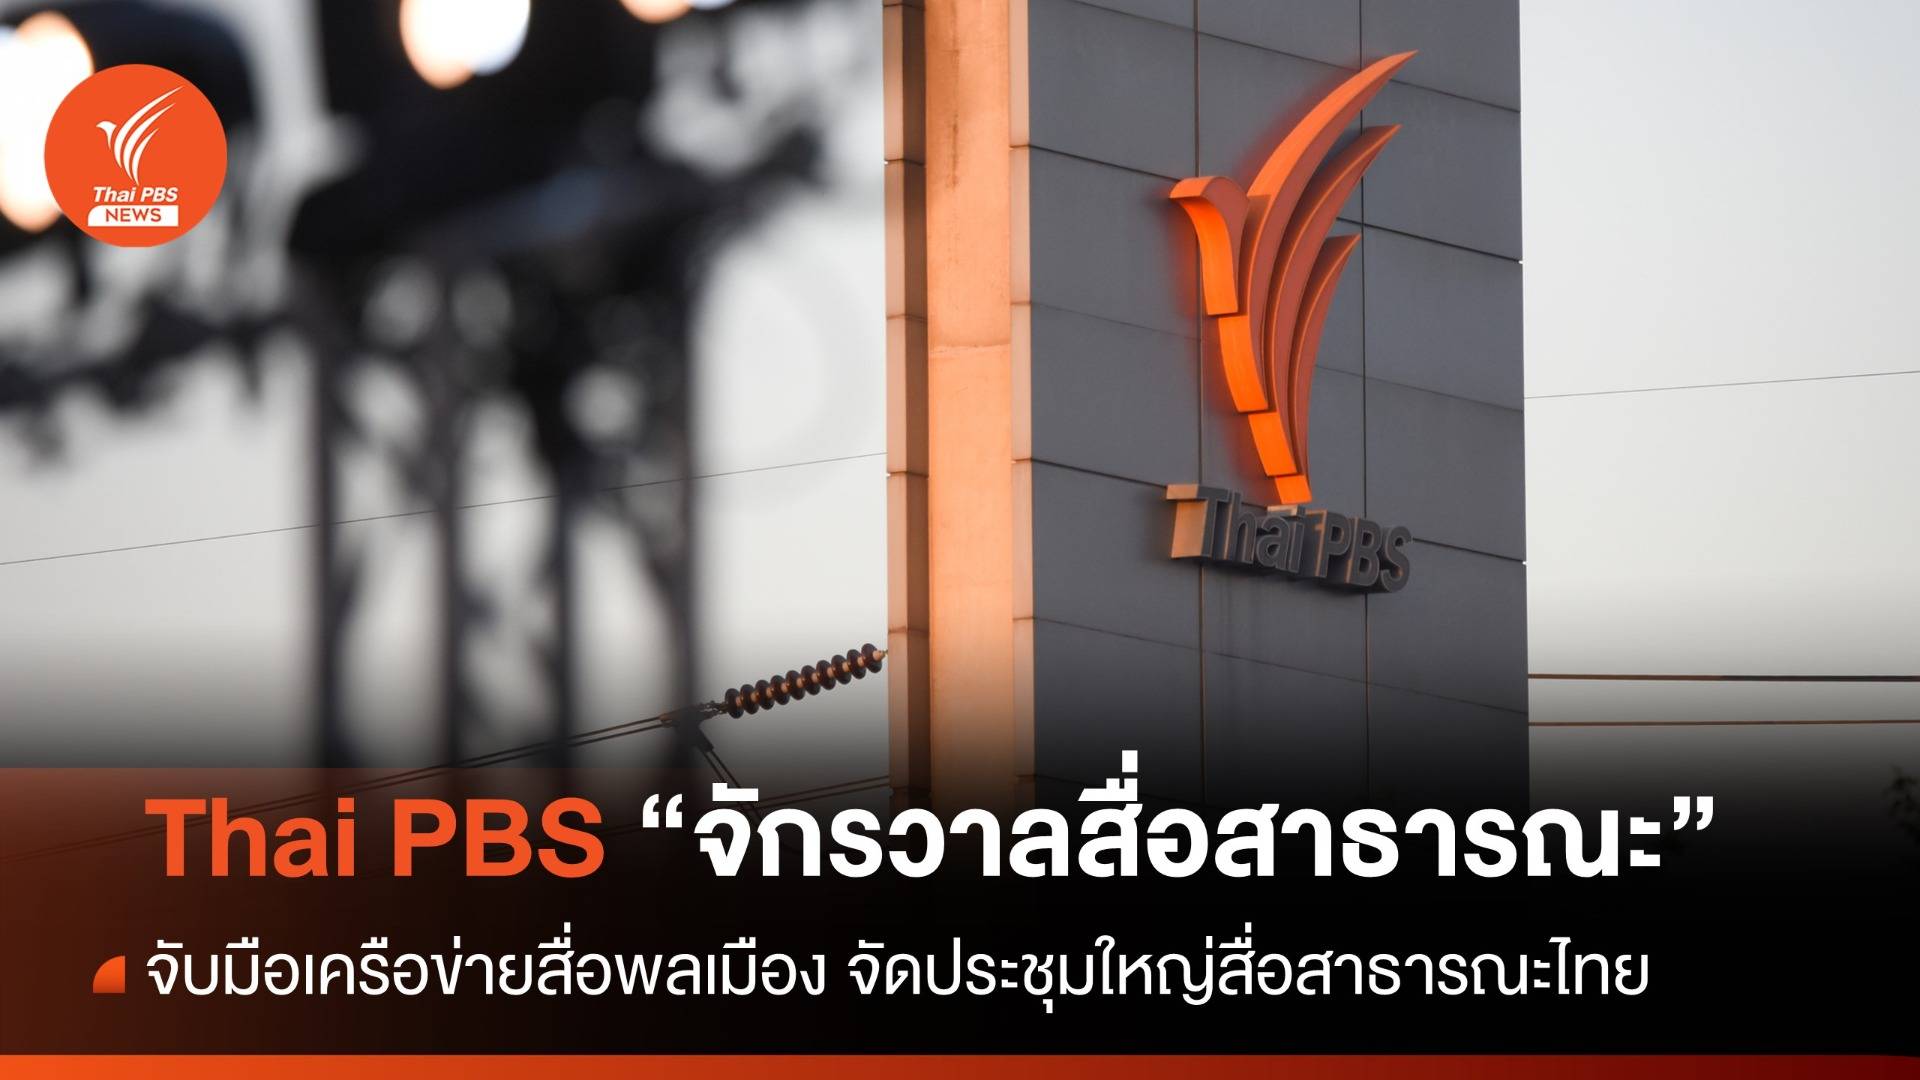 ไทยพีบีเอส เตรียมจัดประชุมใหญ่เครือข่ายสื่อสาธารณะไทย พร้อมจับมือเครือข่ายสื่อพลเมือง ก้าวสู่ "จักรวาลสื่อสาธารณะ"